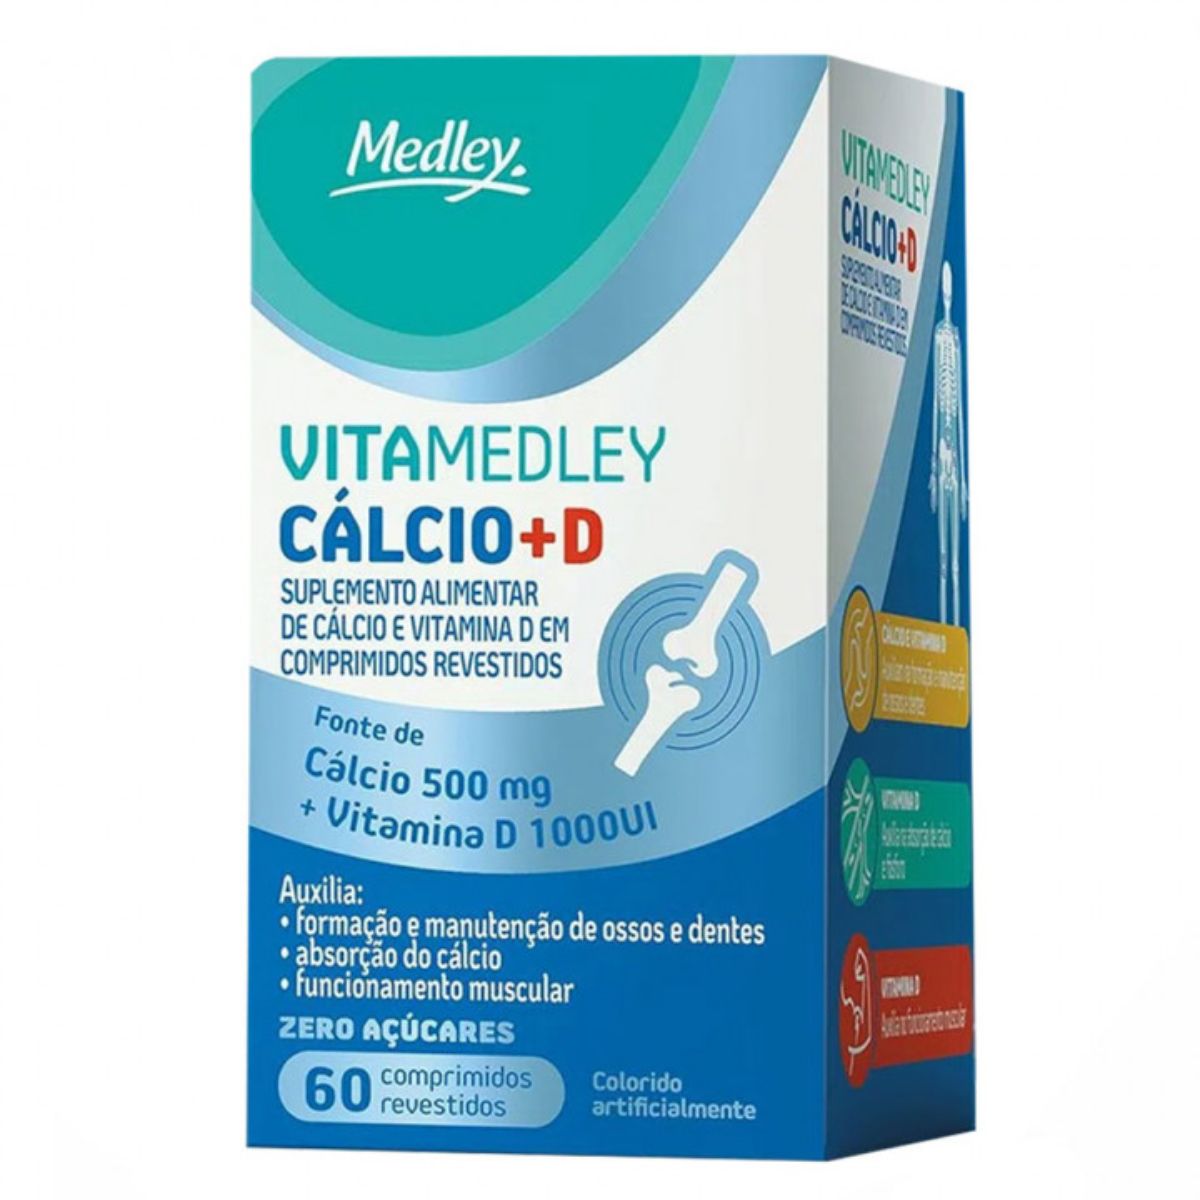 vita-medley-calcio-500-mg-+-vitamina-d-1000ui-60-comprimidos-1.jpg